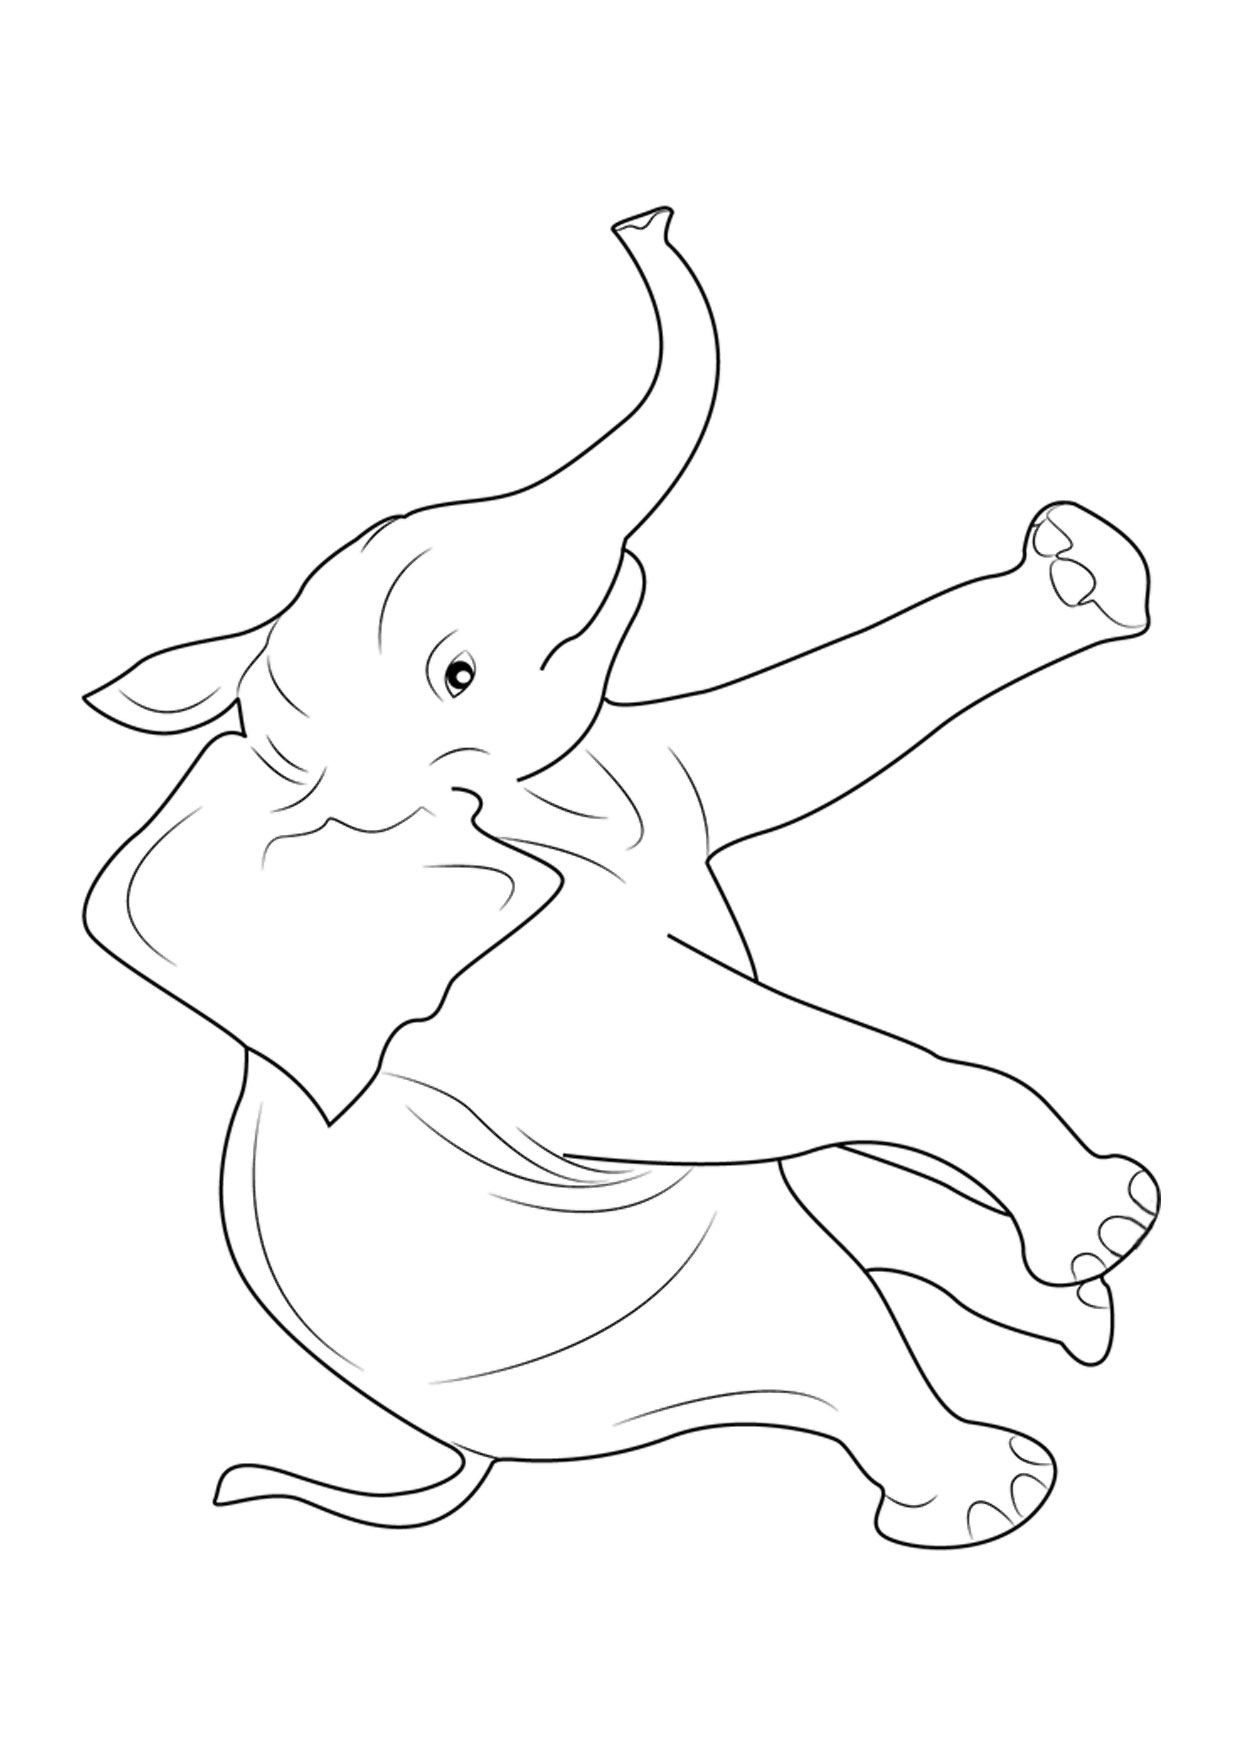 Disegno di elefanti da colorare 10